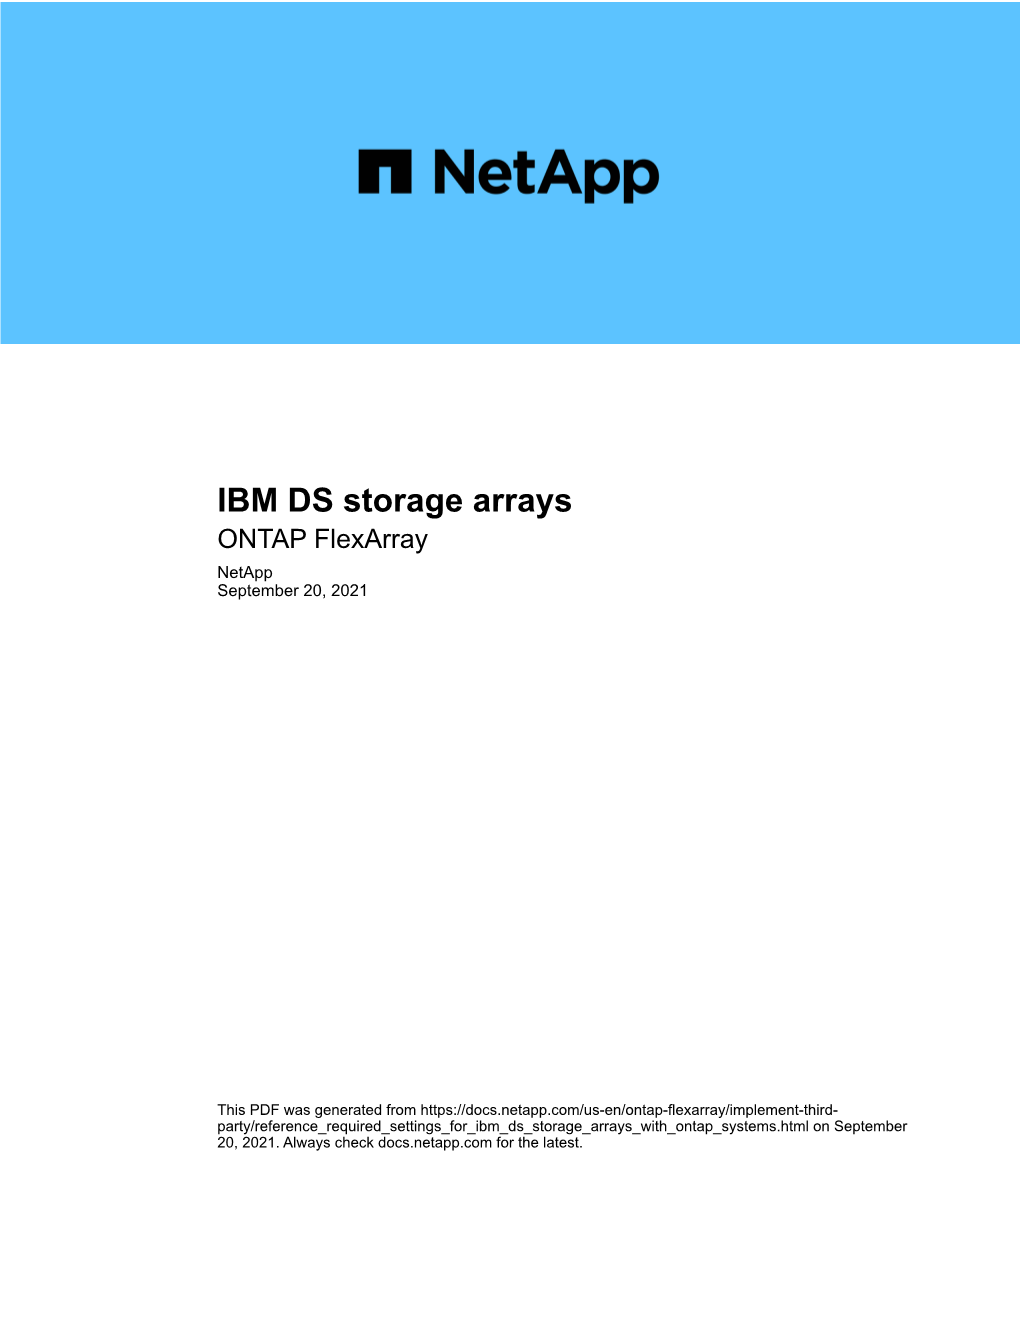 IBM DS Storage Arrays : ONTAP Flexarray